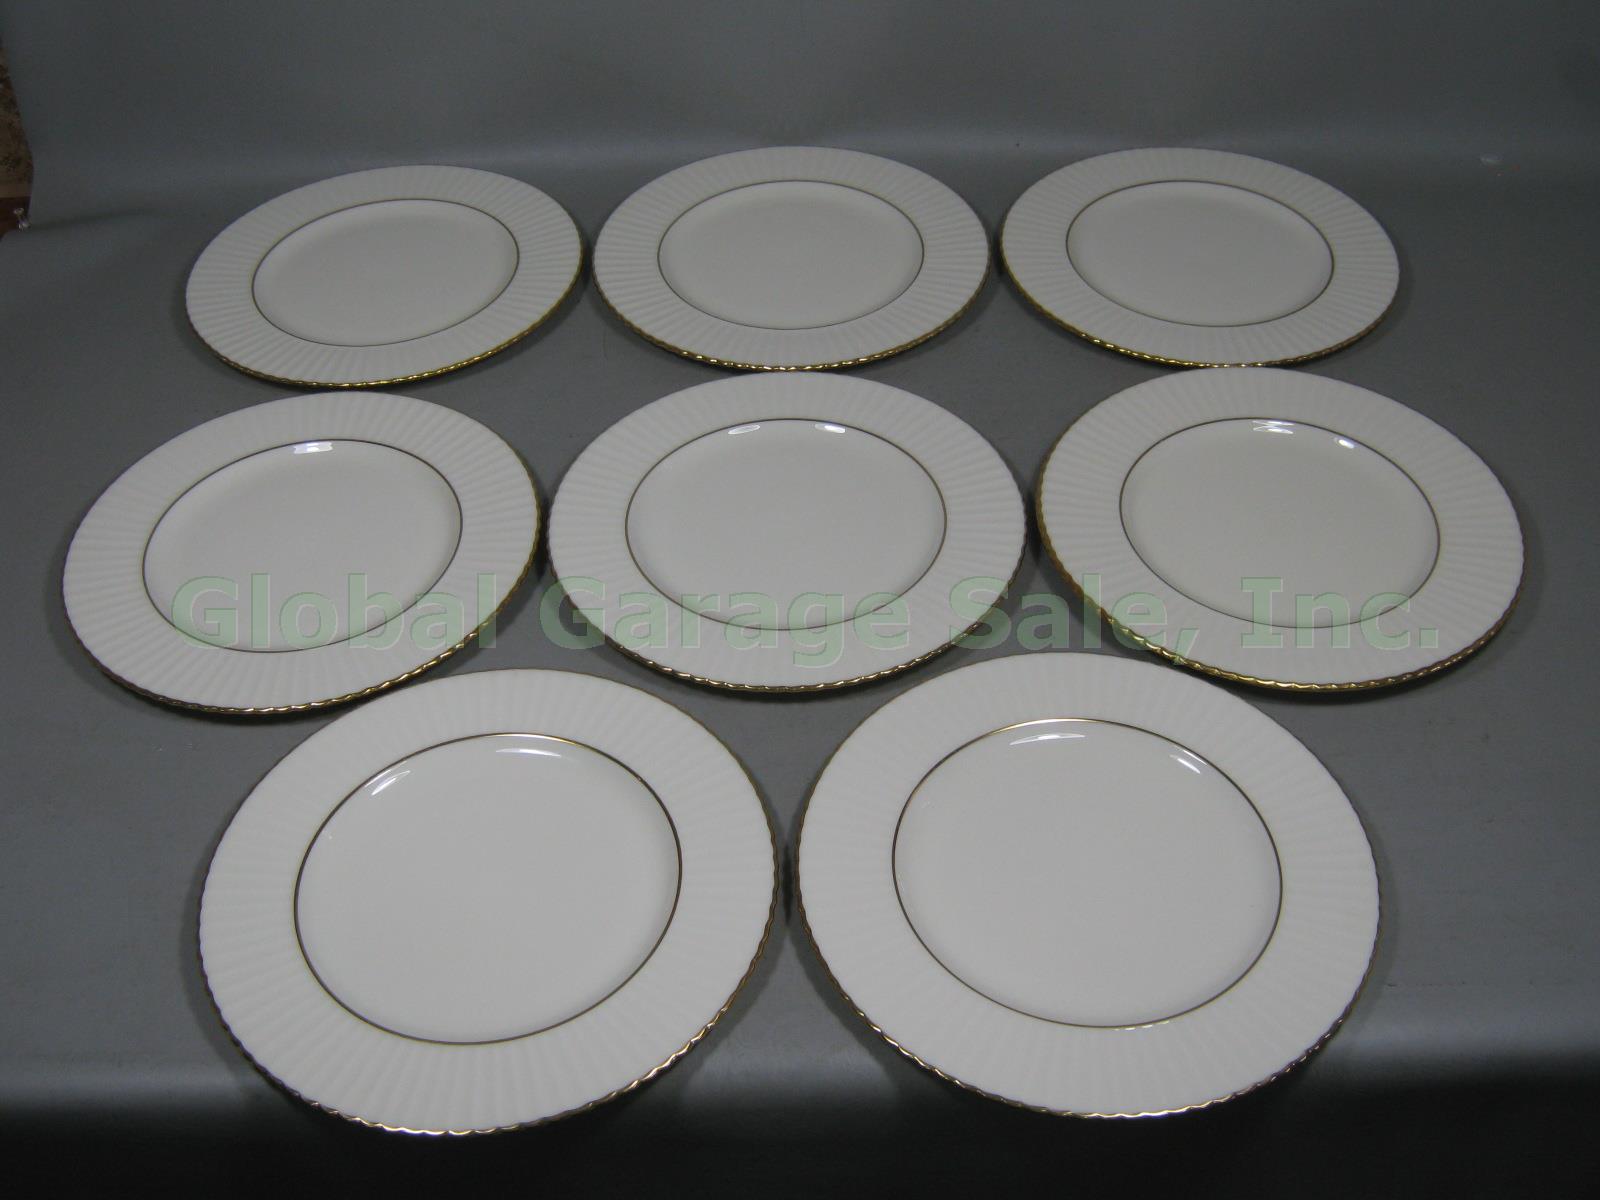 8 Lenox Gold Rim Trim Dinner Plates Set 11" Colonnade Temple Collection Citation